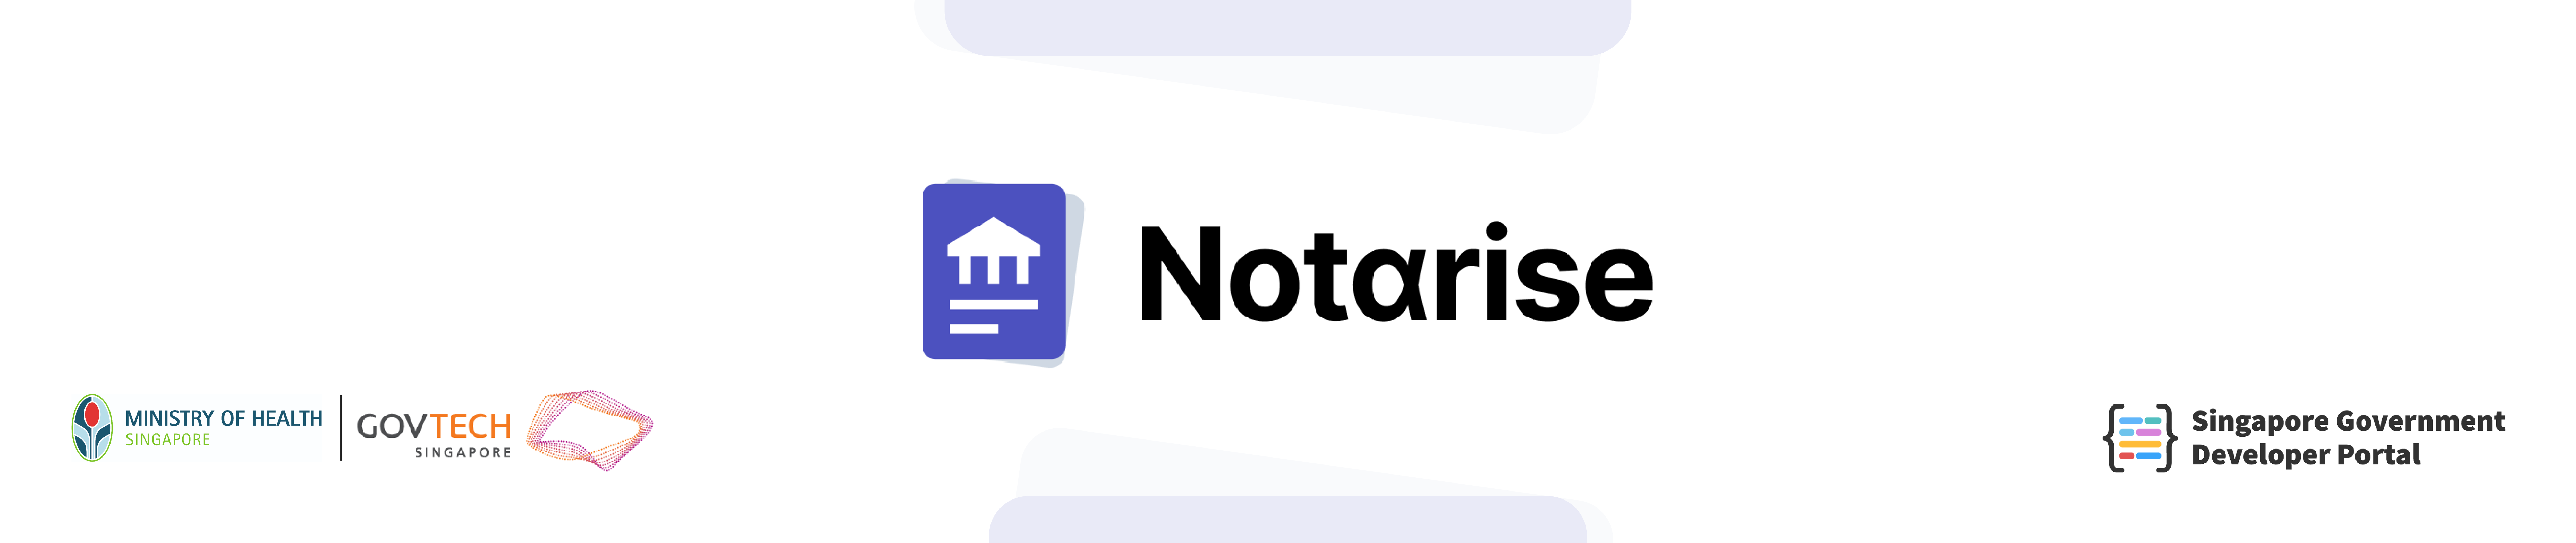 Notαrise header banner